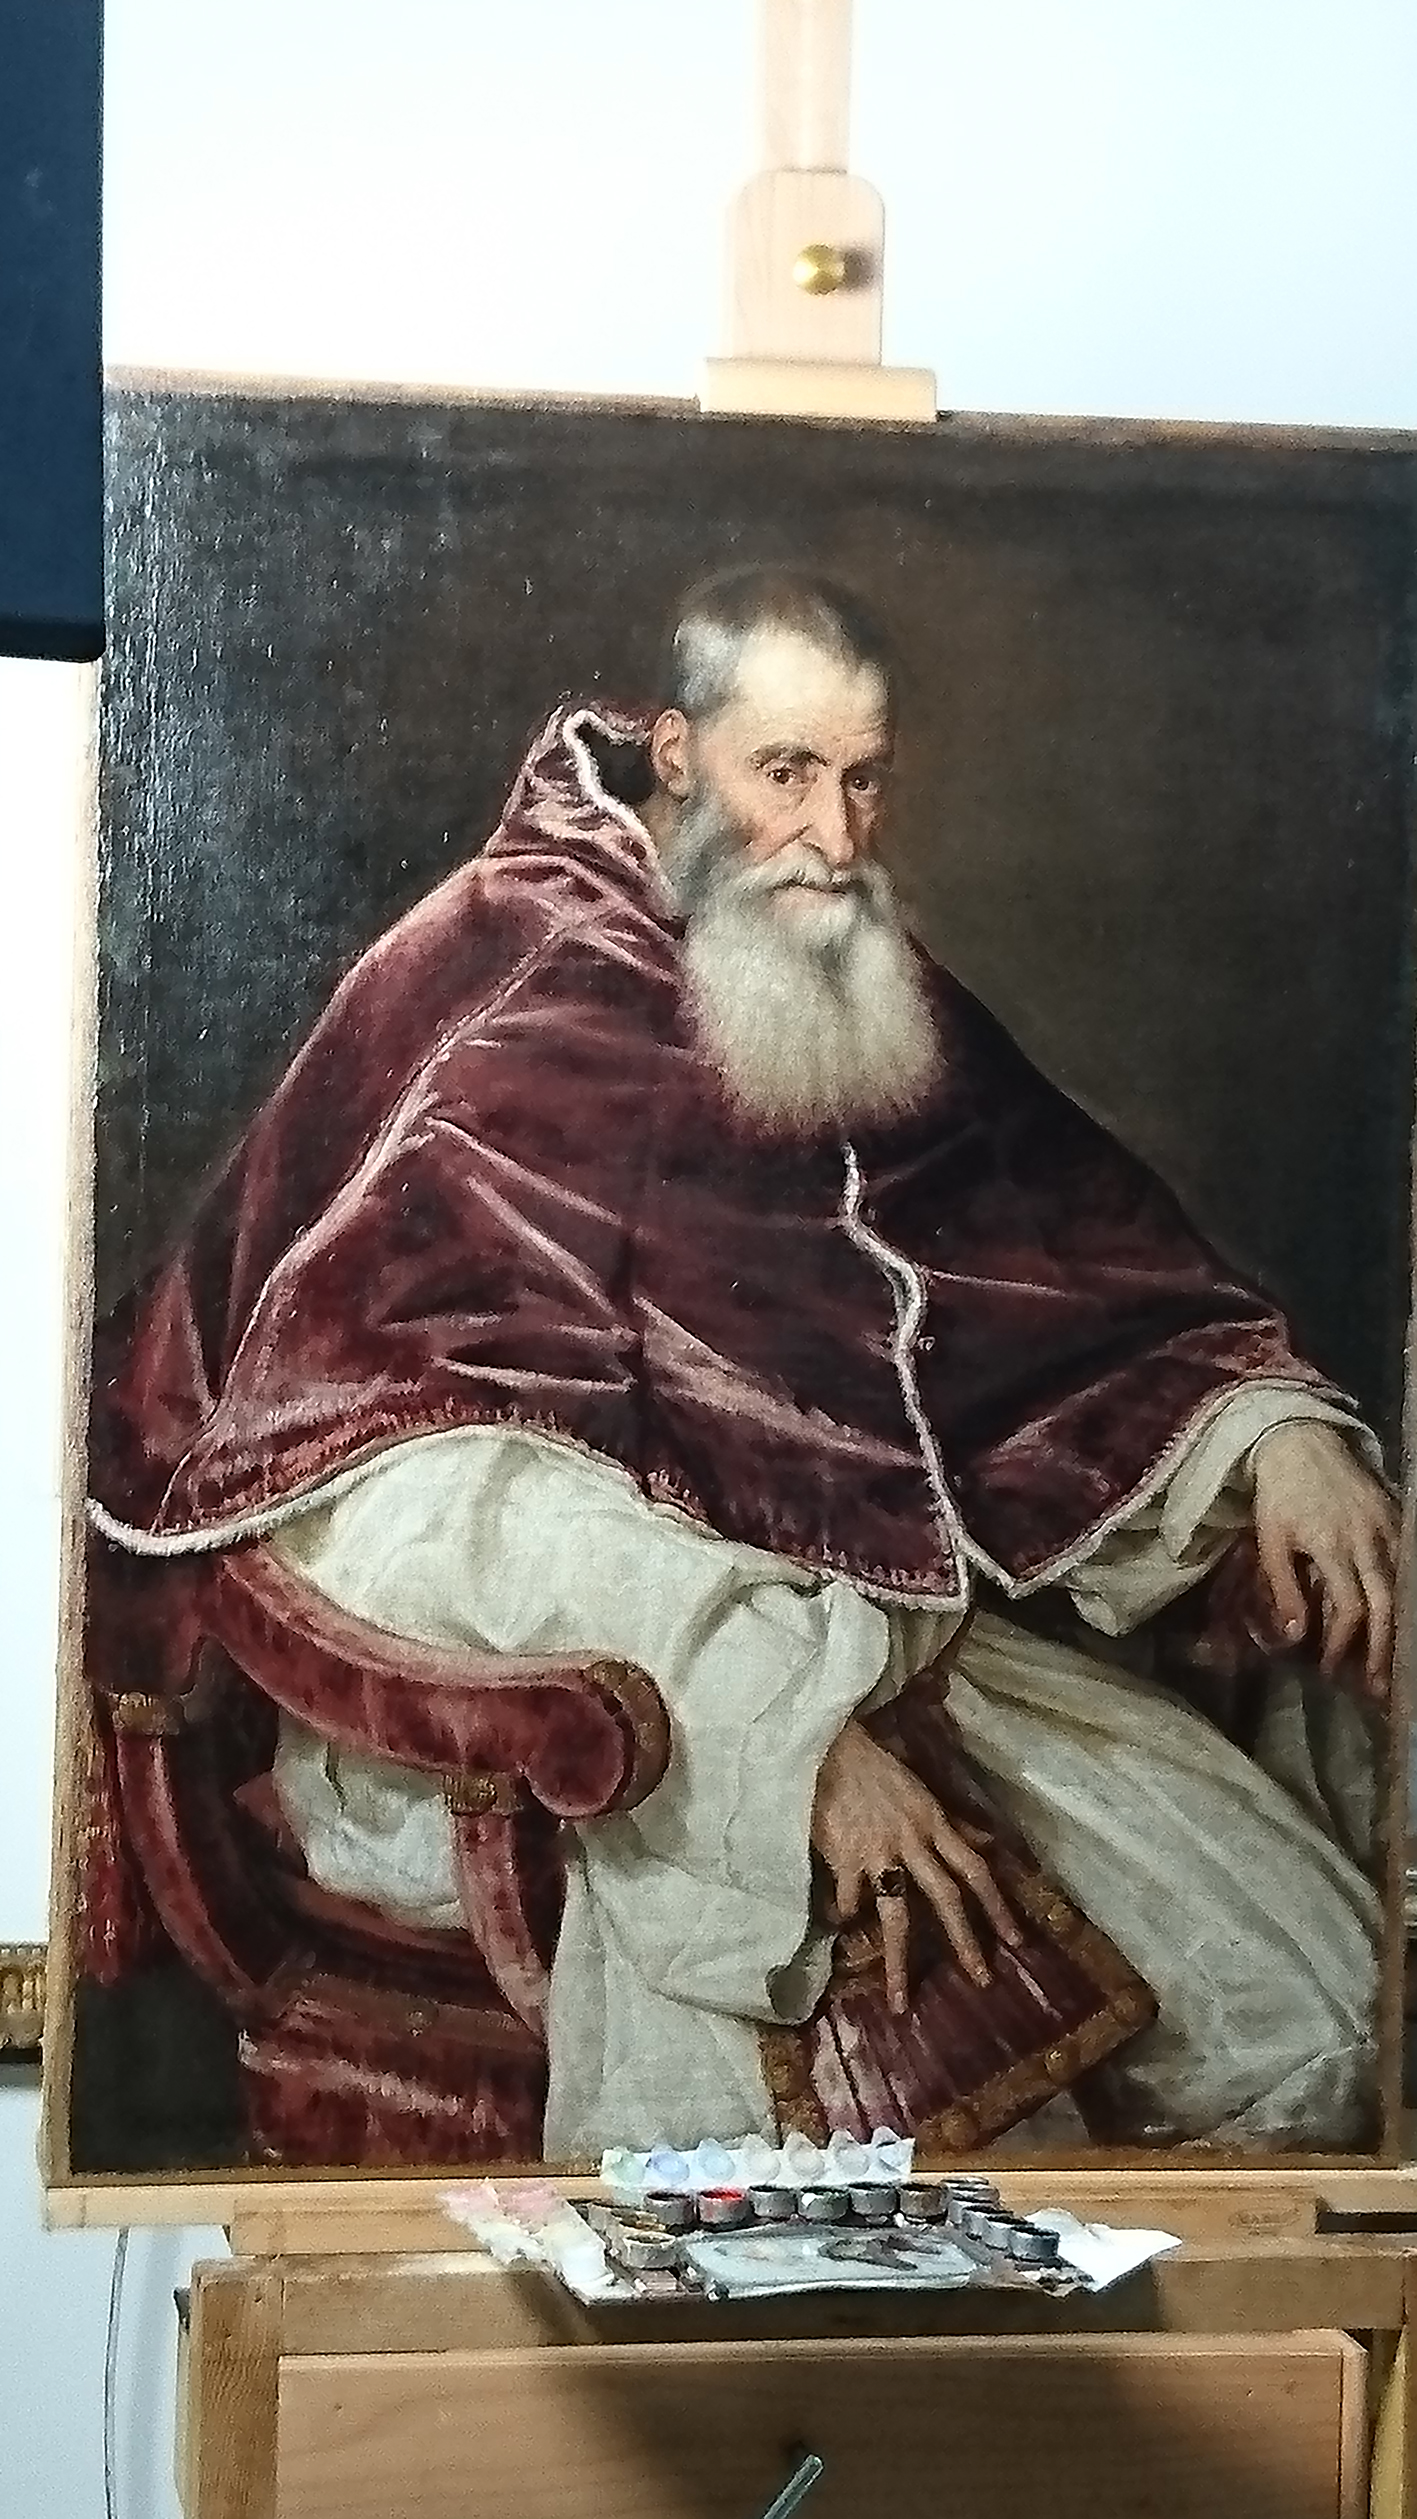 Le Portrait de Paul III, tête nue de Titien (1488-1576) dans l’atelier de restauration du Museo de Capodimonte. © A.F.